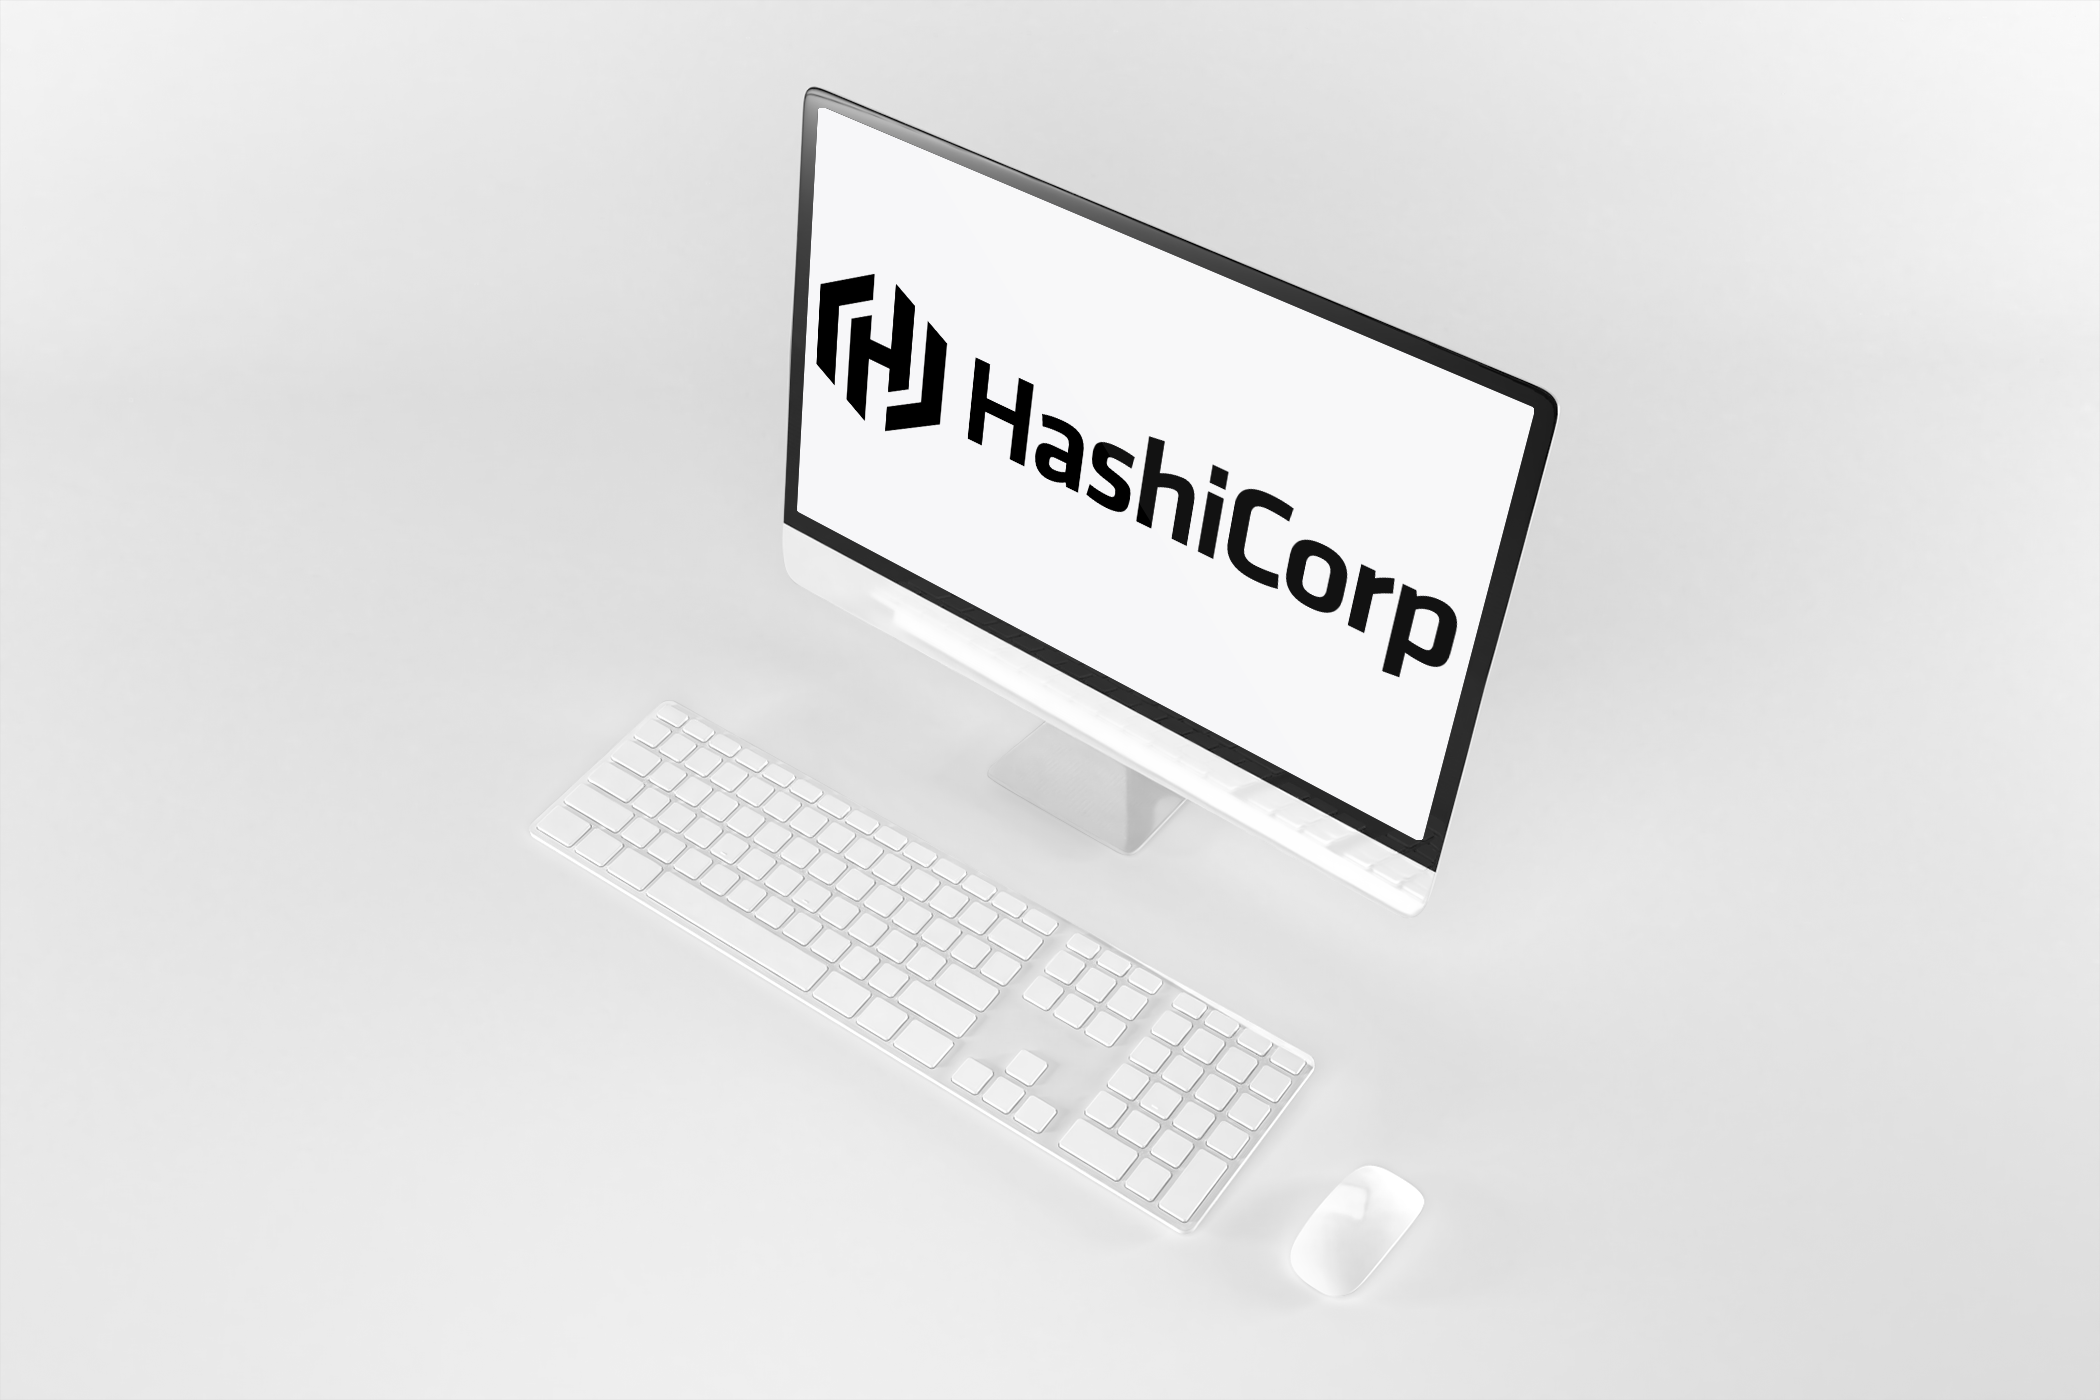 HashiCorp IPO